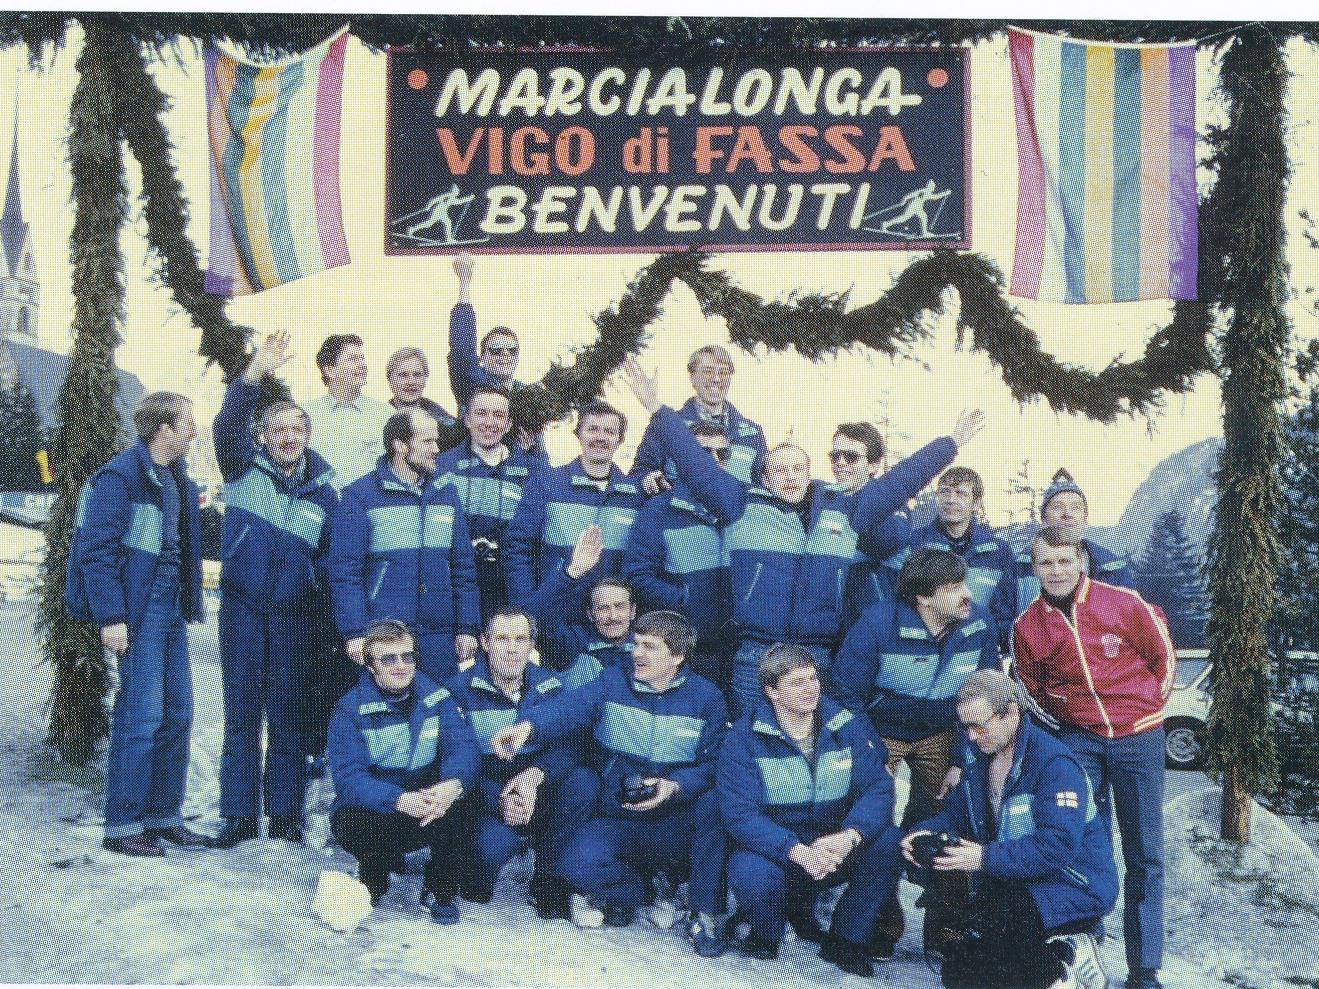 Häijään Urheiluliikkeen ja Arvo Mäkelän ympärille muodostui Karhu- Kopla niminen WL-hiihtoryhmä. Kuvassa ryhmä Marcialongassa 1982.